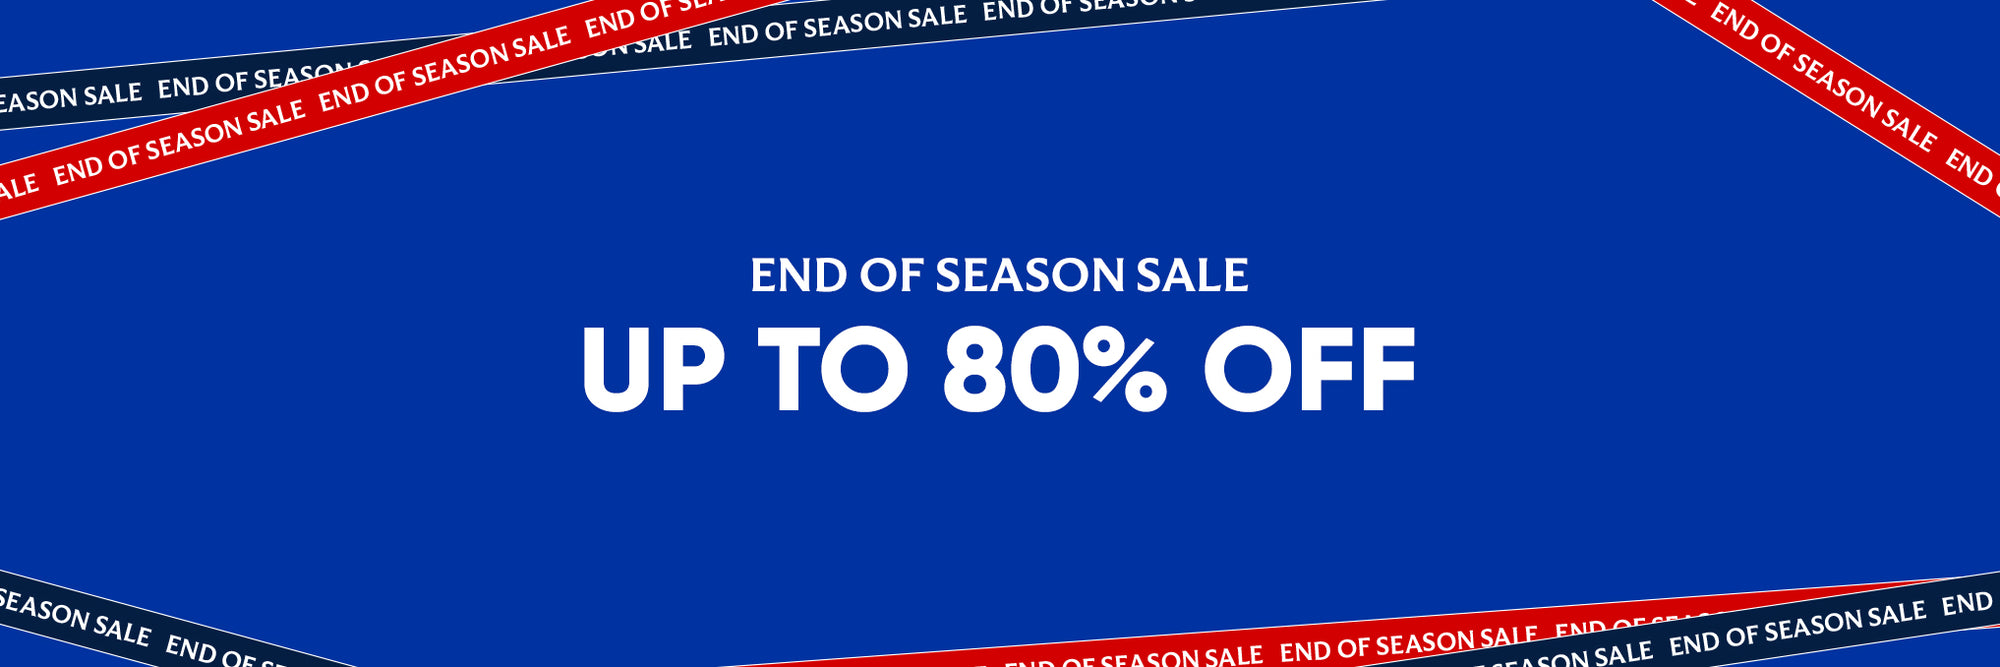 23/24 End of Season Sale